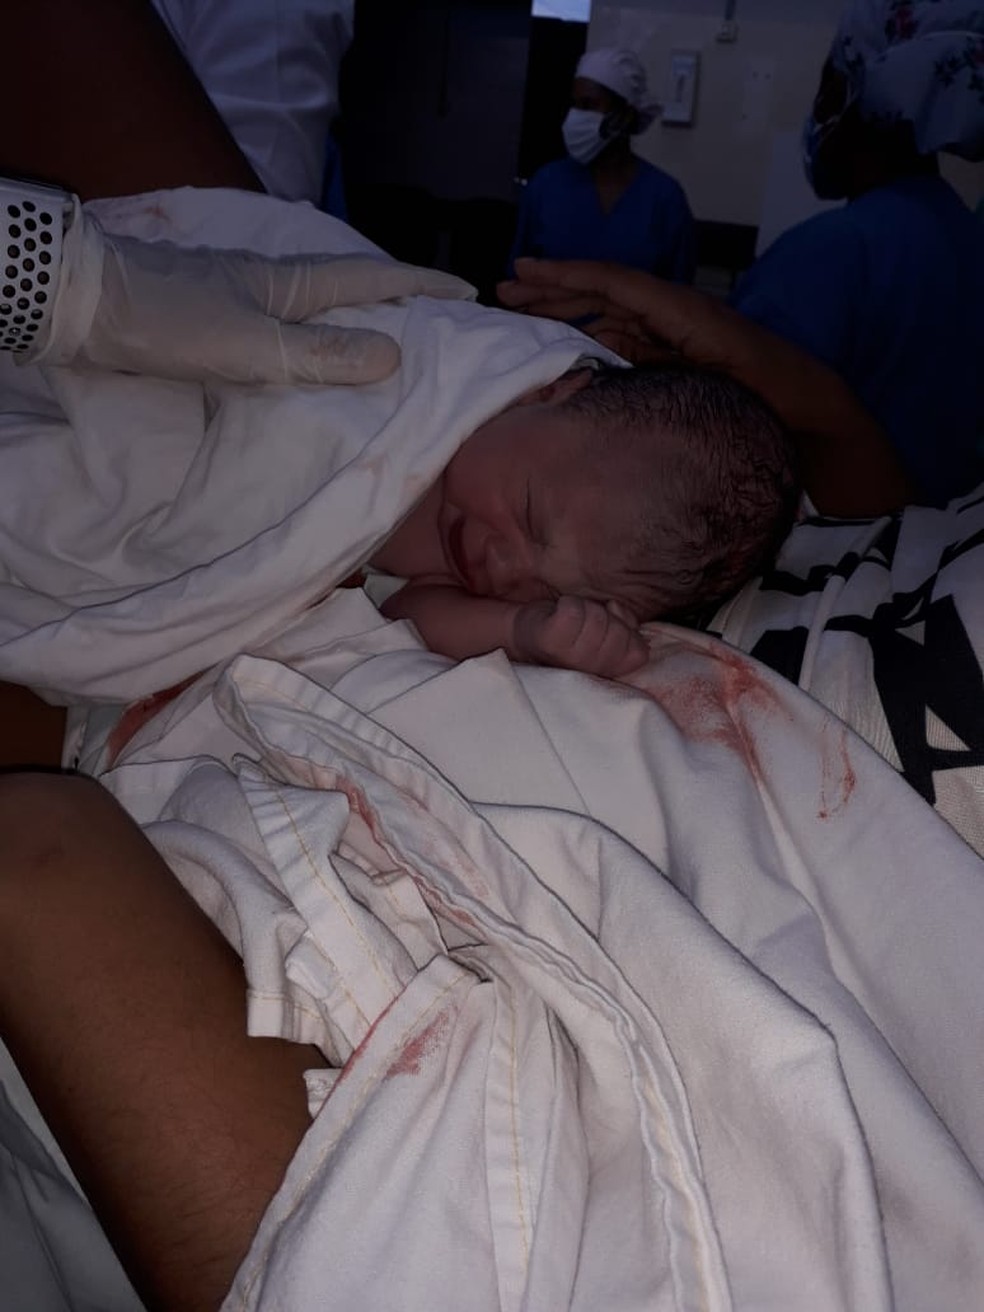 Foto tirada depois do parto mostra jovem antes de morrer em hospital de  Boituva